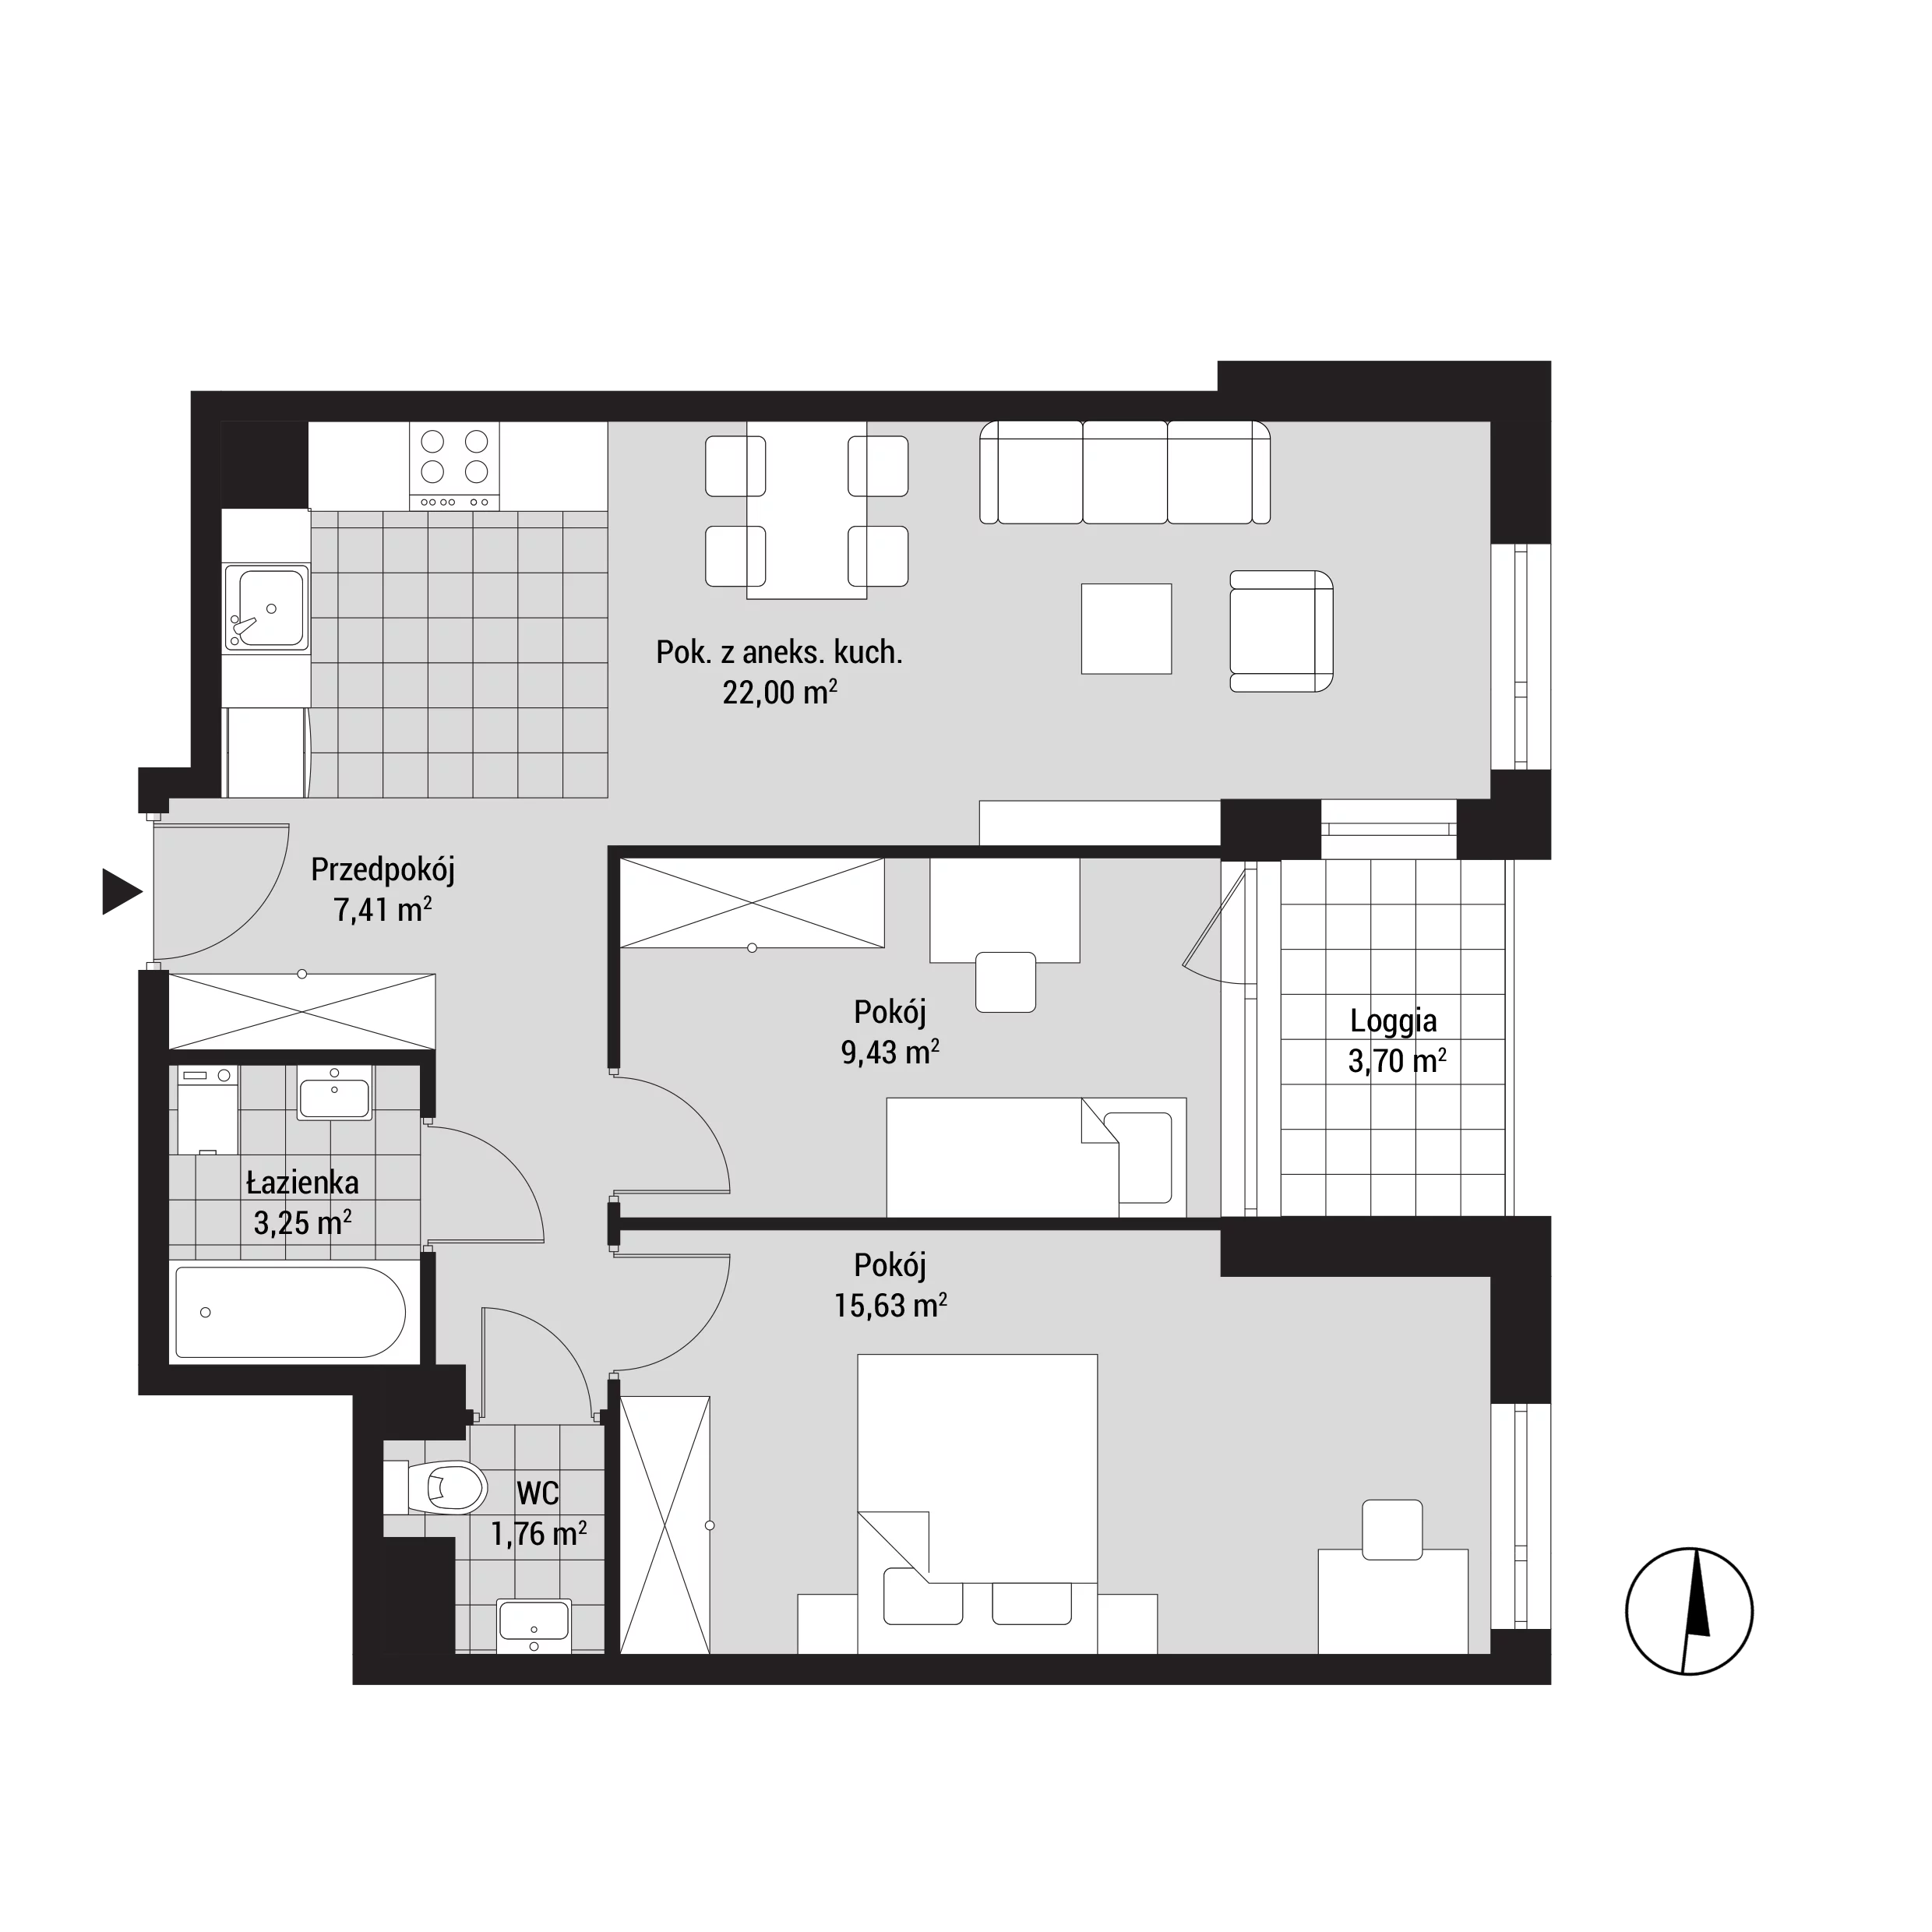 Mieszkanie 60,46 m², piętro 1, oferta nr mieszkanie A08, Na Koszutce, Katowice, Śródmieście, Koszutka, ul. Słoneczna 1